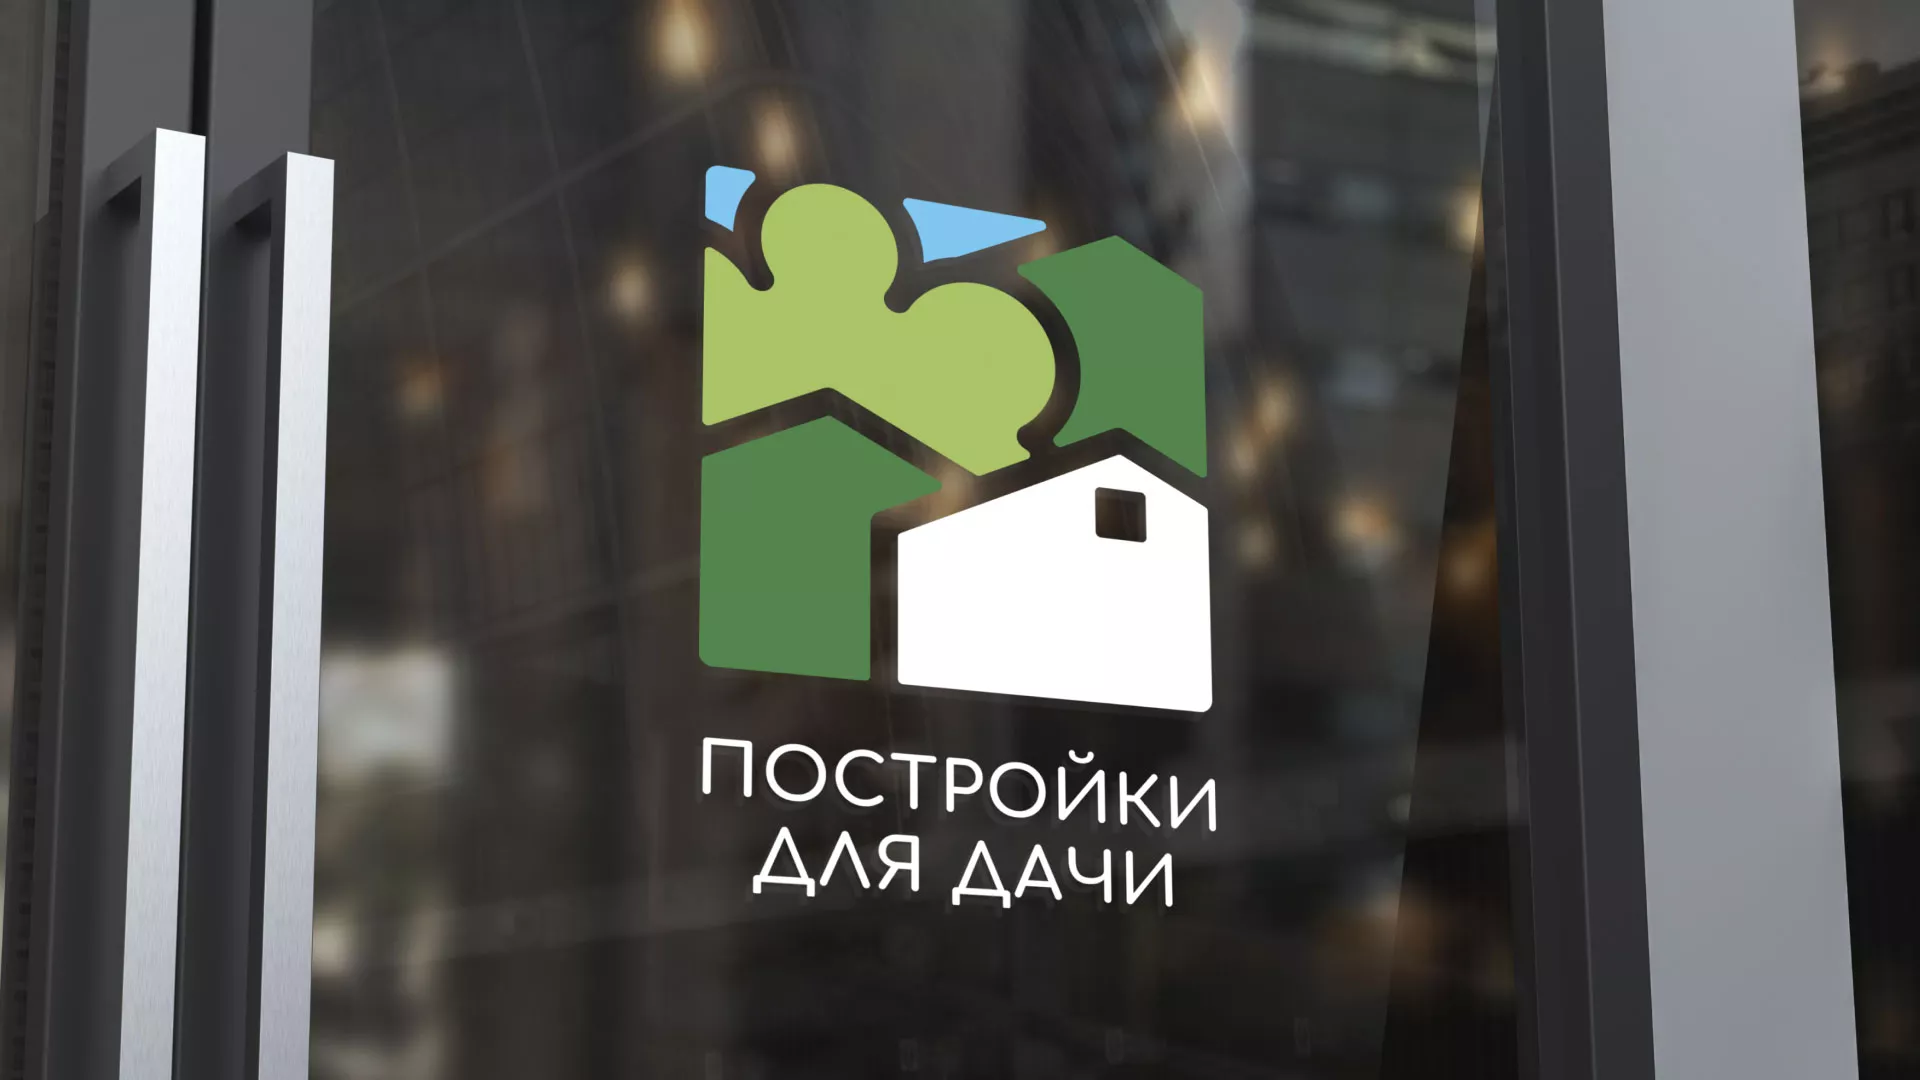 Разработка логотипа в Михайлове для компании «Постройки для дачи»